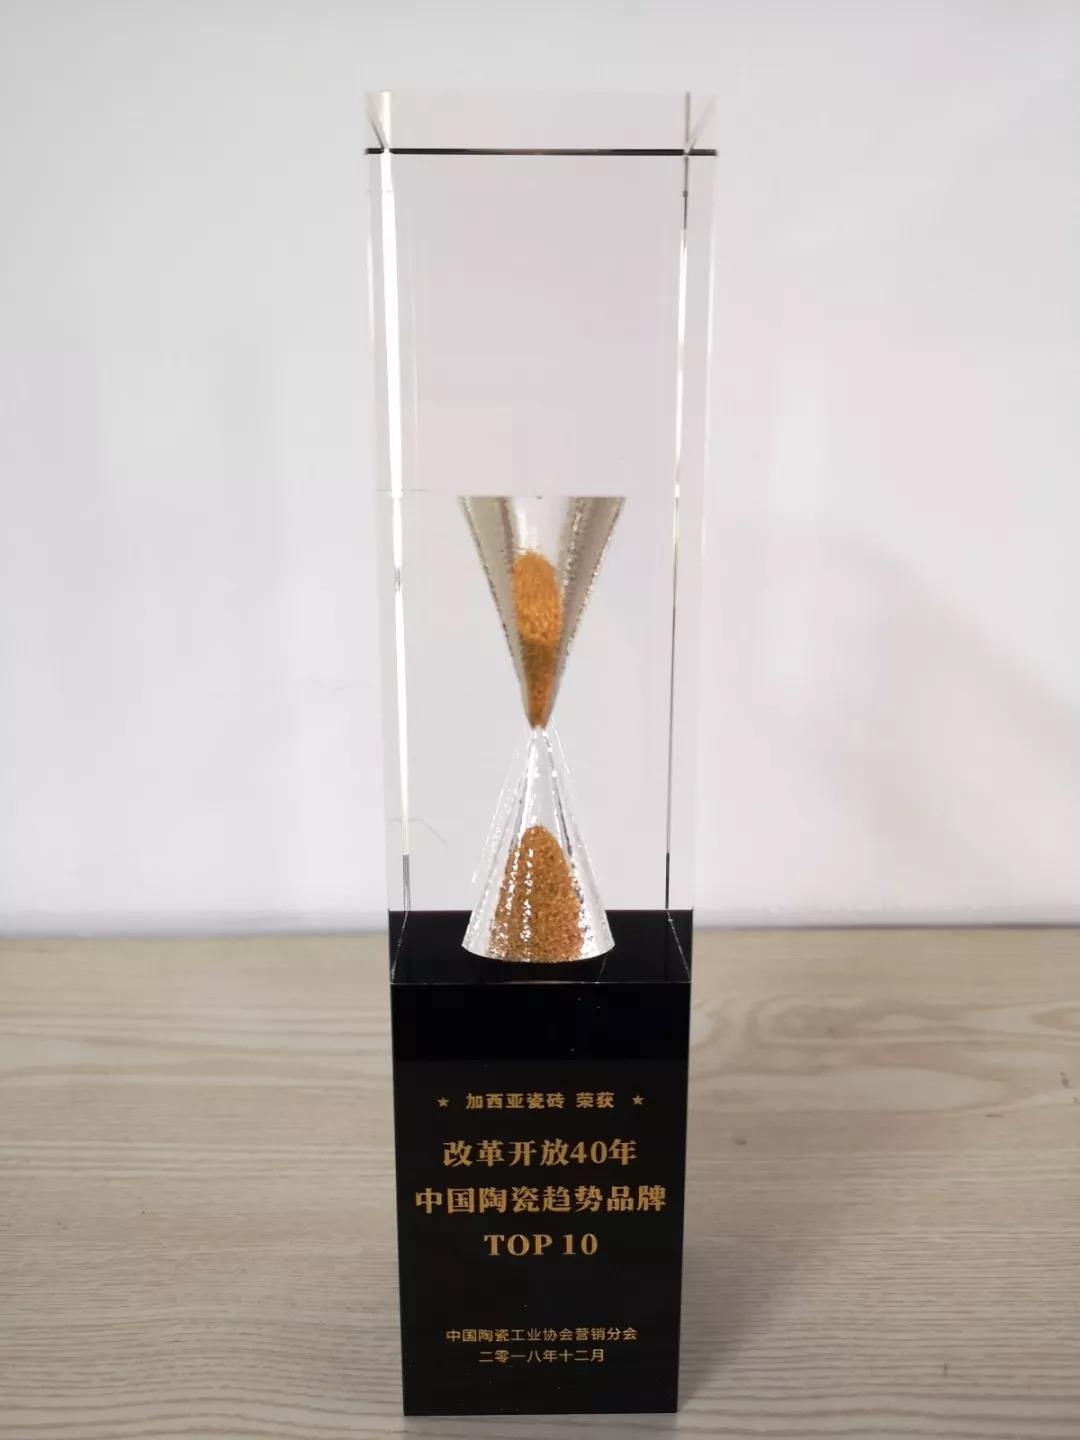 加西亚瓷砖荣获“中国陶瓷趋势品牌TOP10”称号